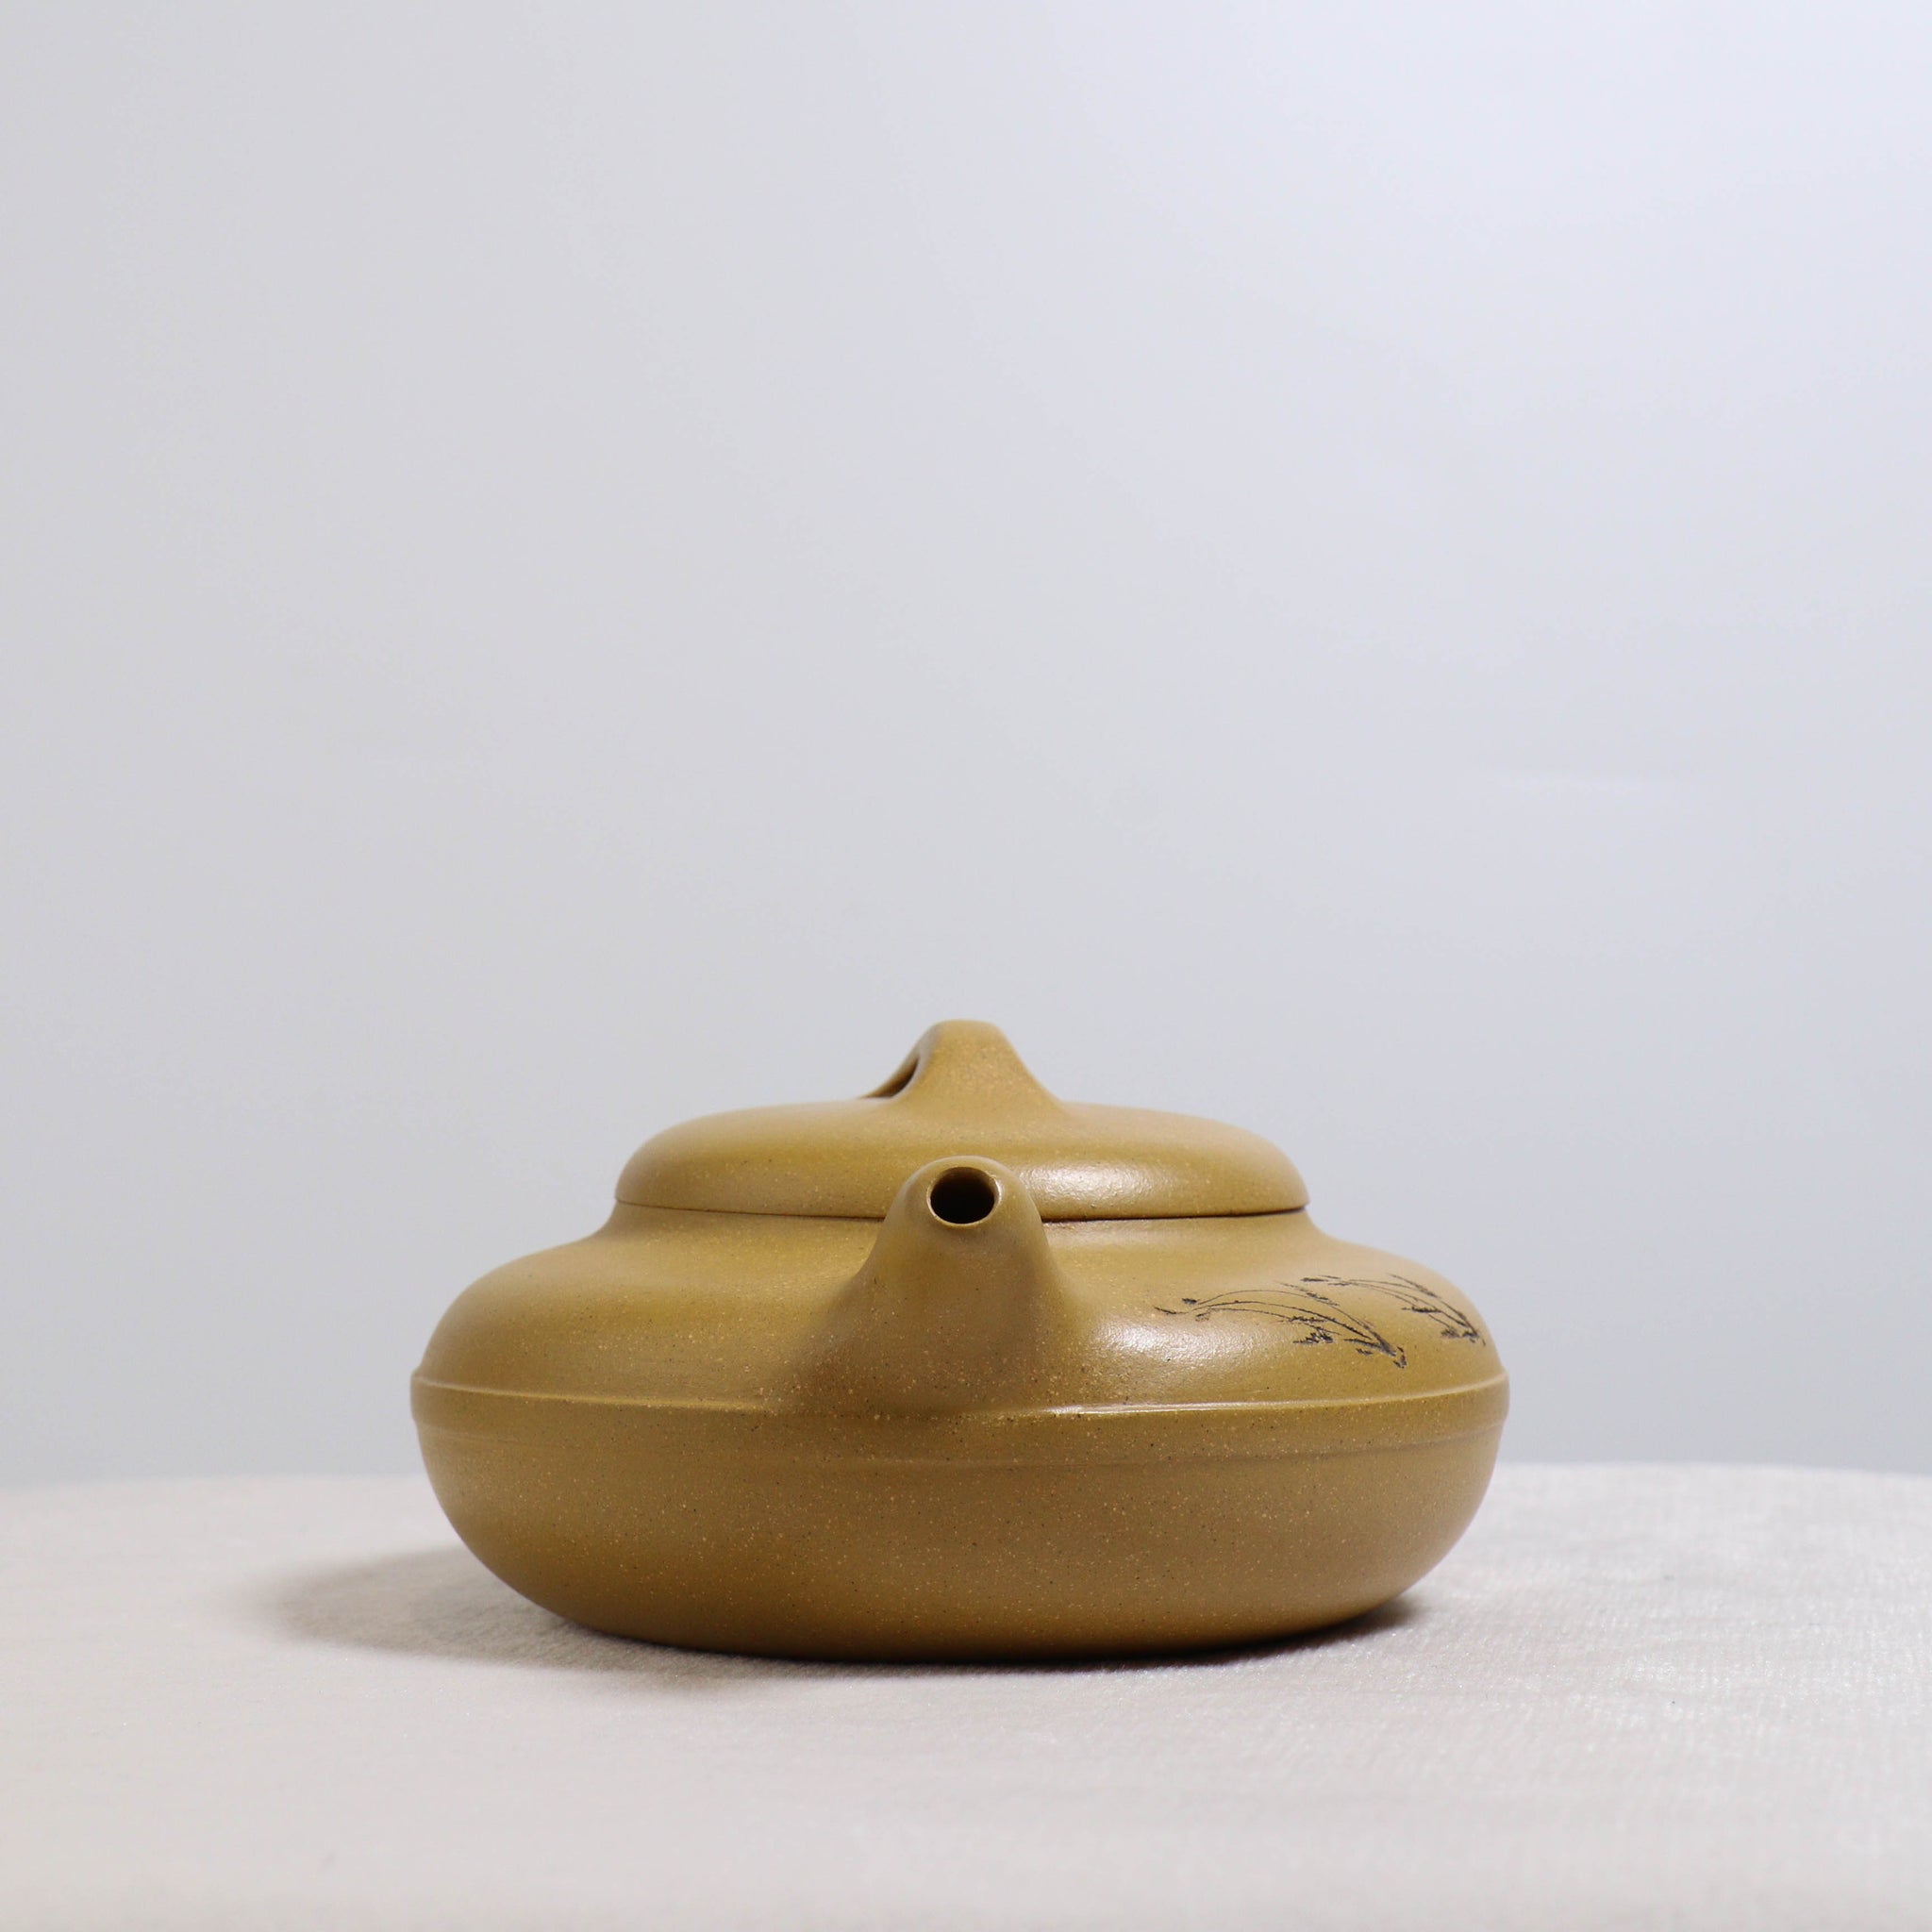 【線圓】黃段泥刻畫書法紫砂茶壺